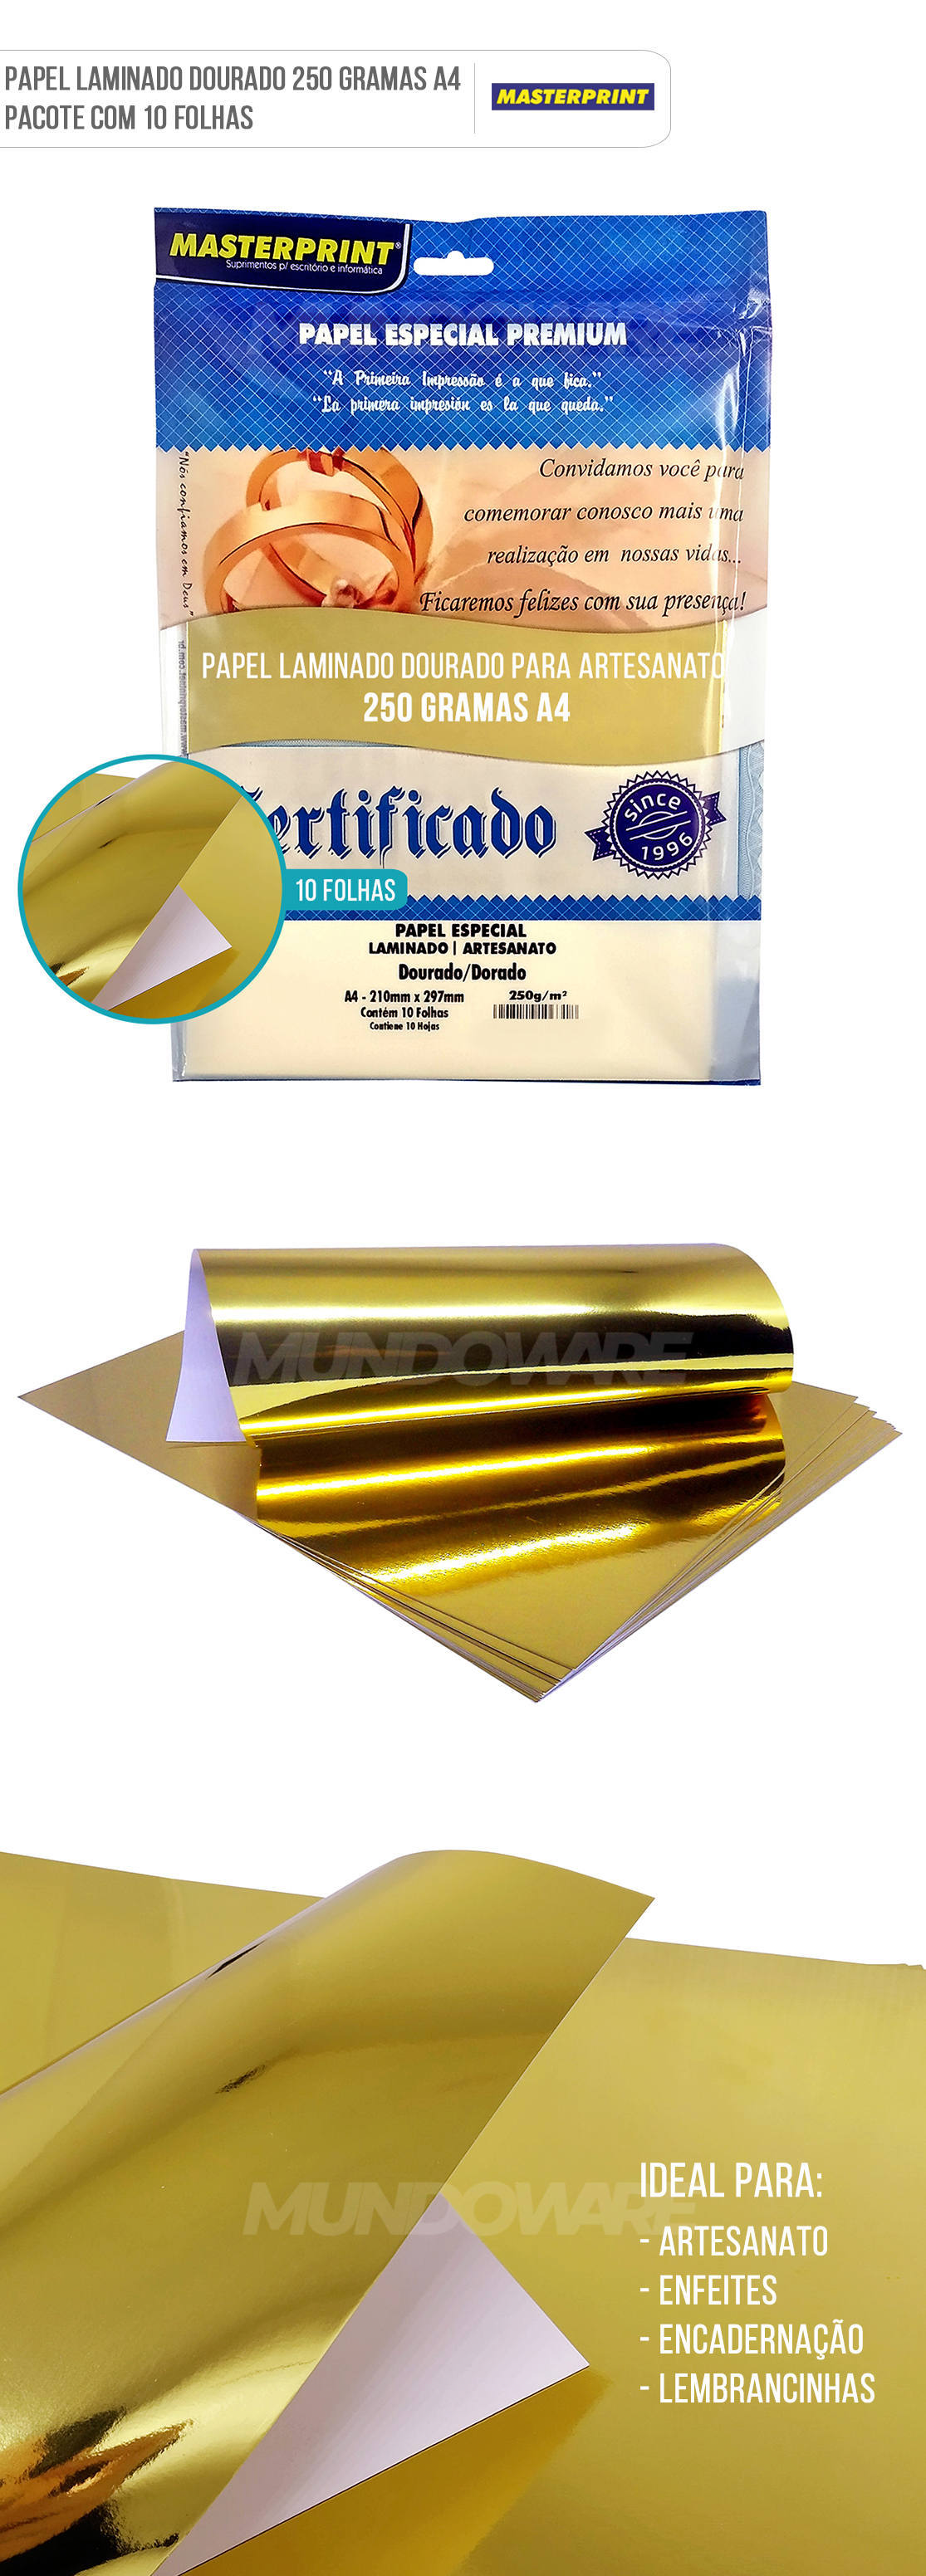 Papel Laminado Dourado A4 250g para Artesanato Enfeites Lembrancinhas Pacote com 10 Folhas Masterprint